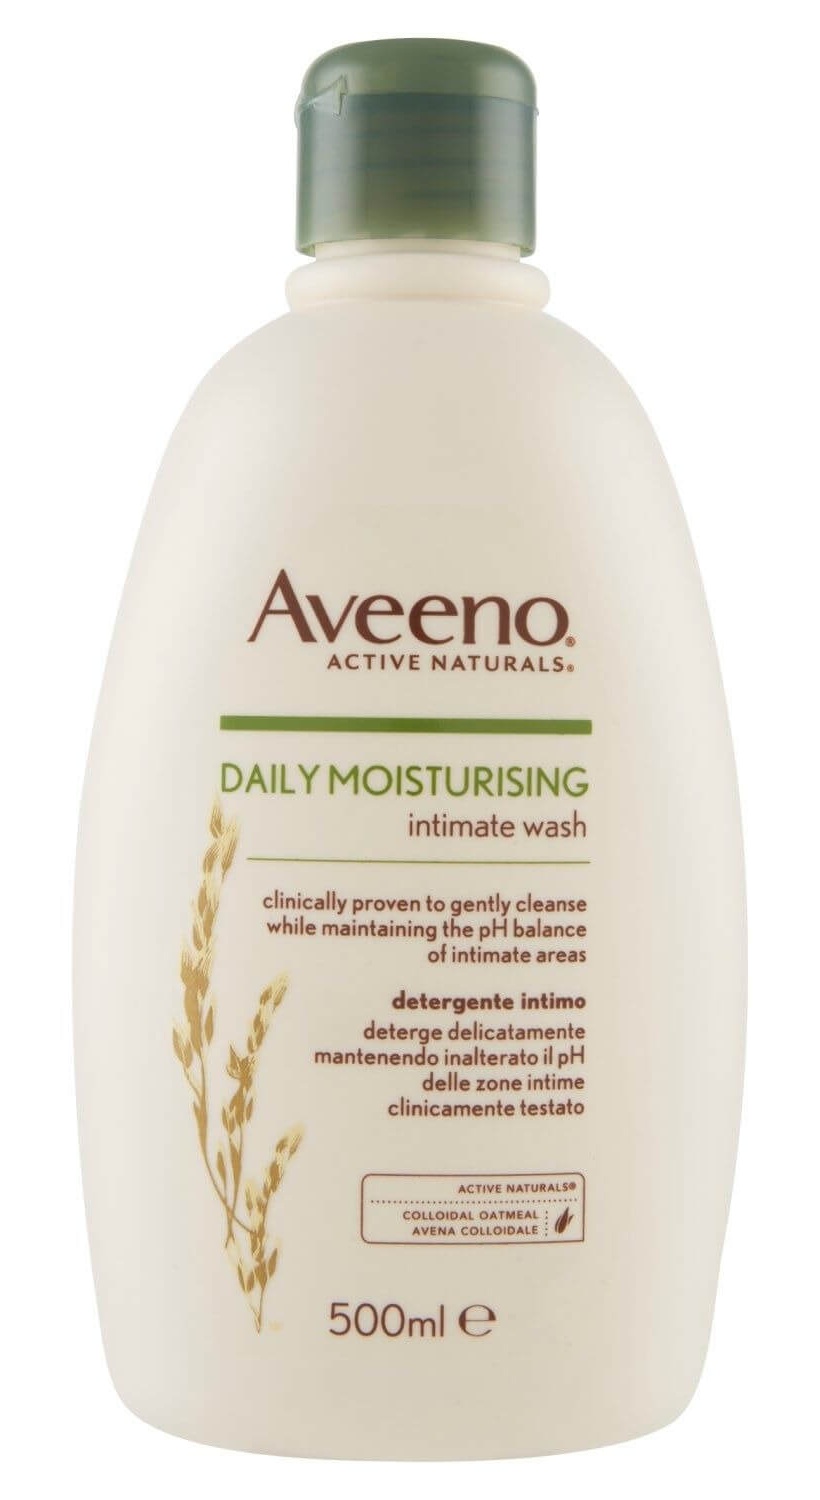 Aveeno Daily Moisturising Intimate Wash